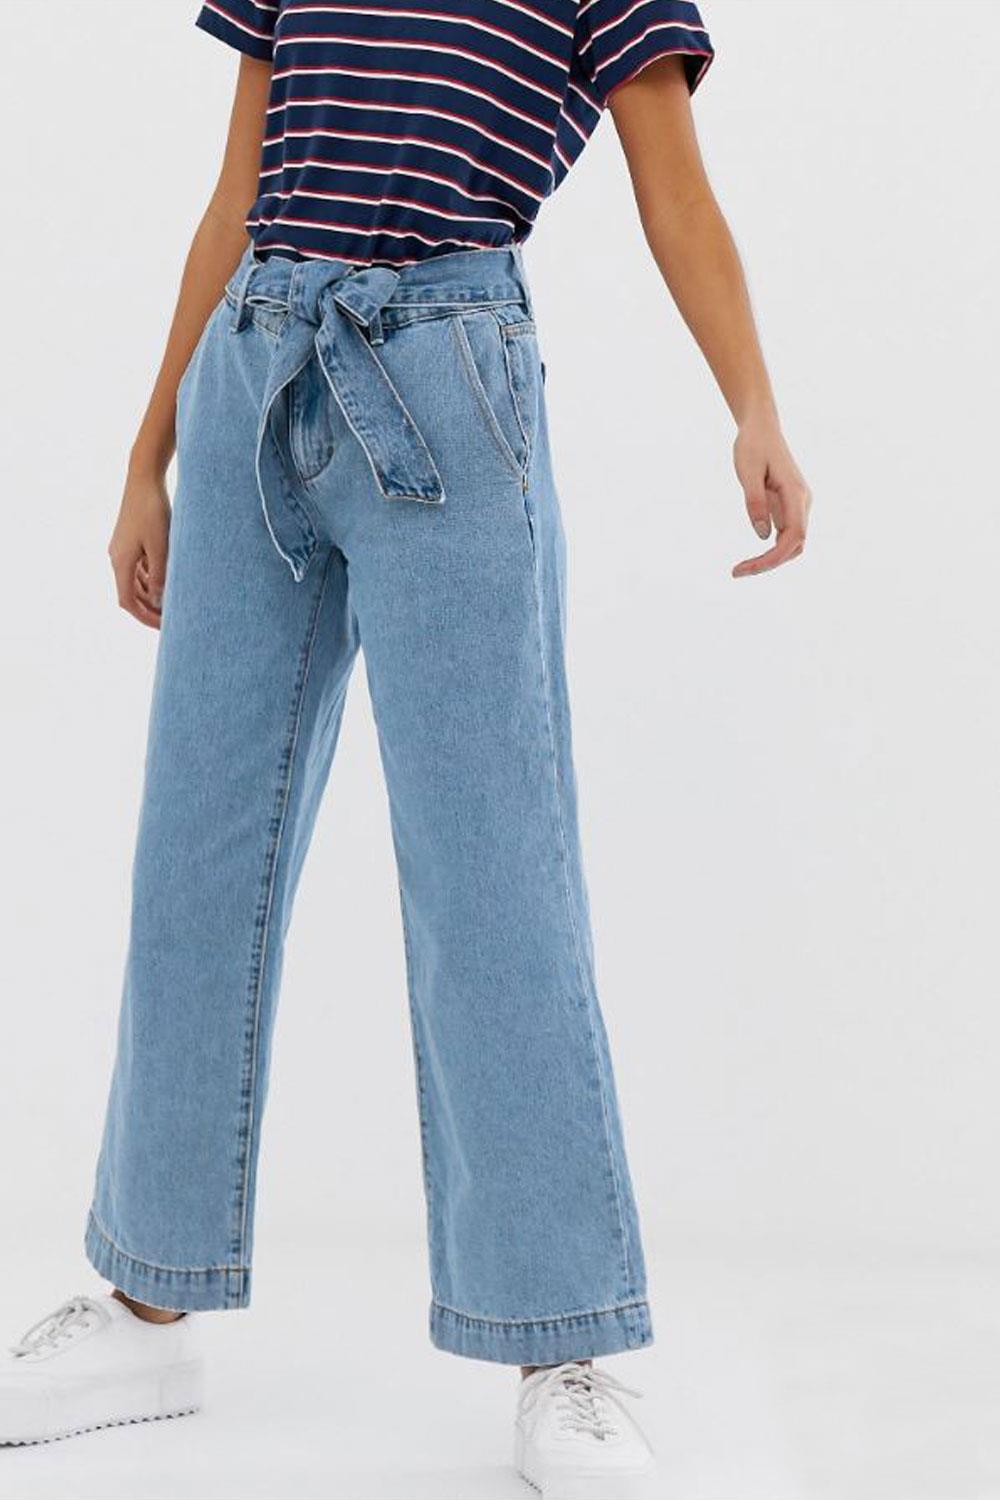 qué comprar en rebajas jeans Pimkie, 11,99€ (antes 26,99€)